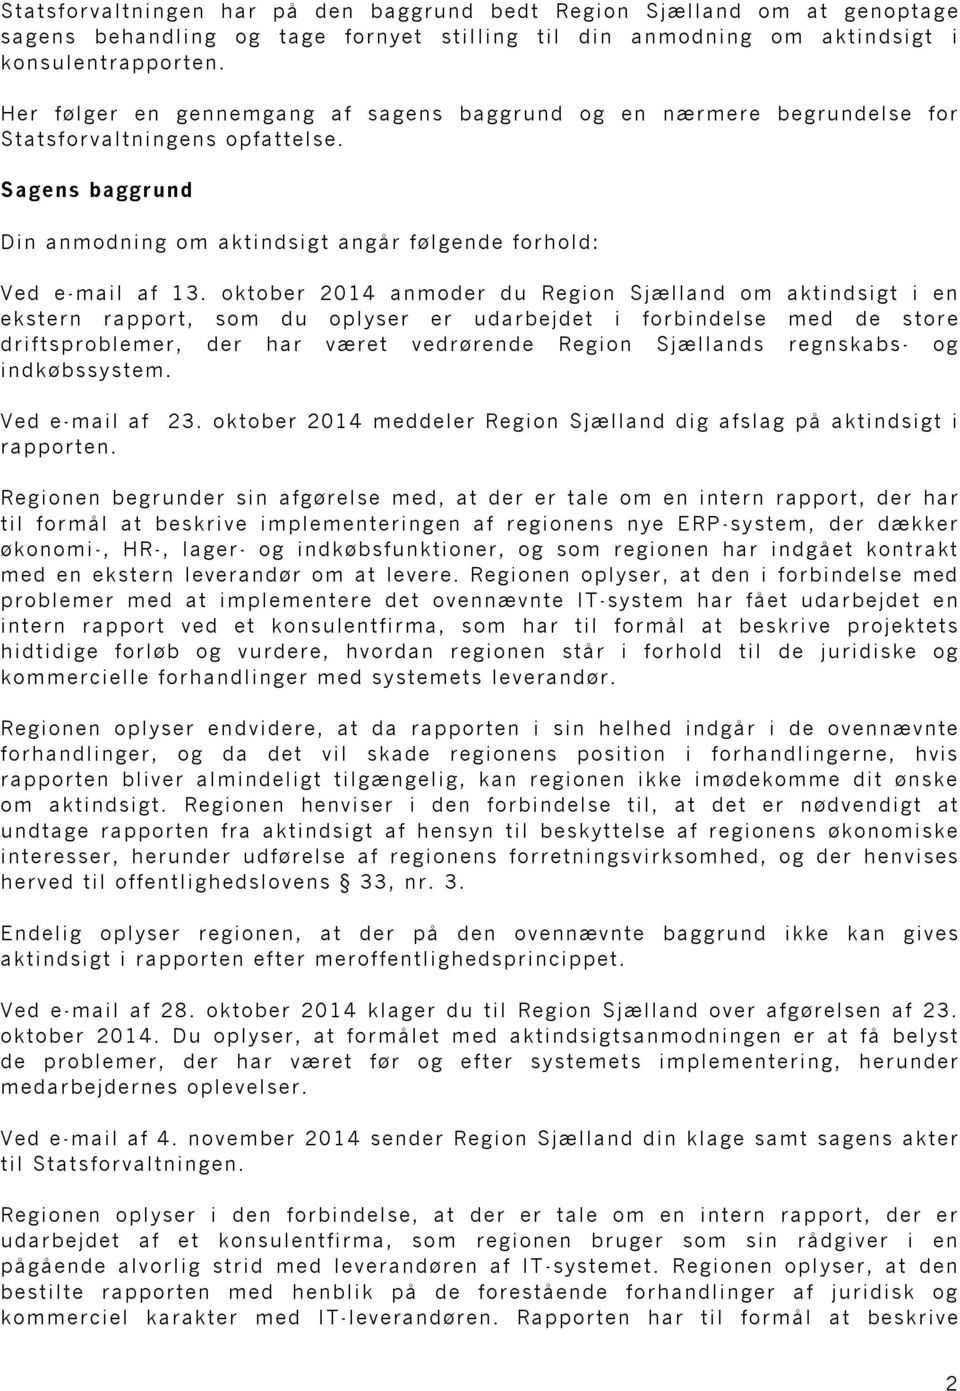 oktober 2014 anmoder du Region Sjælland om aktindsigt i en ekstern rapport, som du oplyser er udarbejdet i forbindelse med de store driftsproblemer, der har været vedrørende Region Sjællands